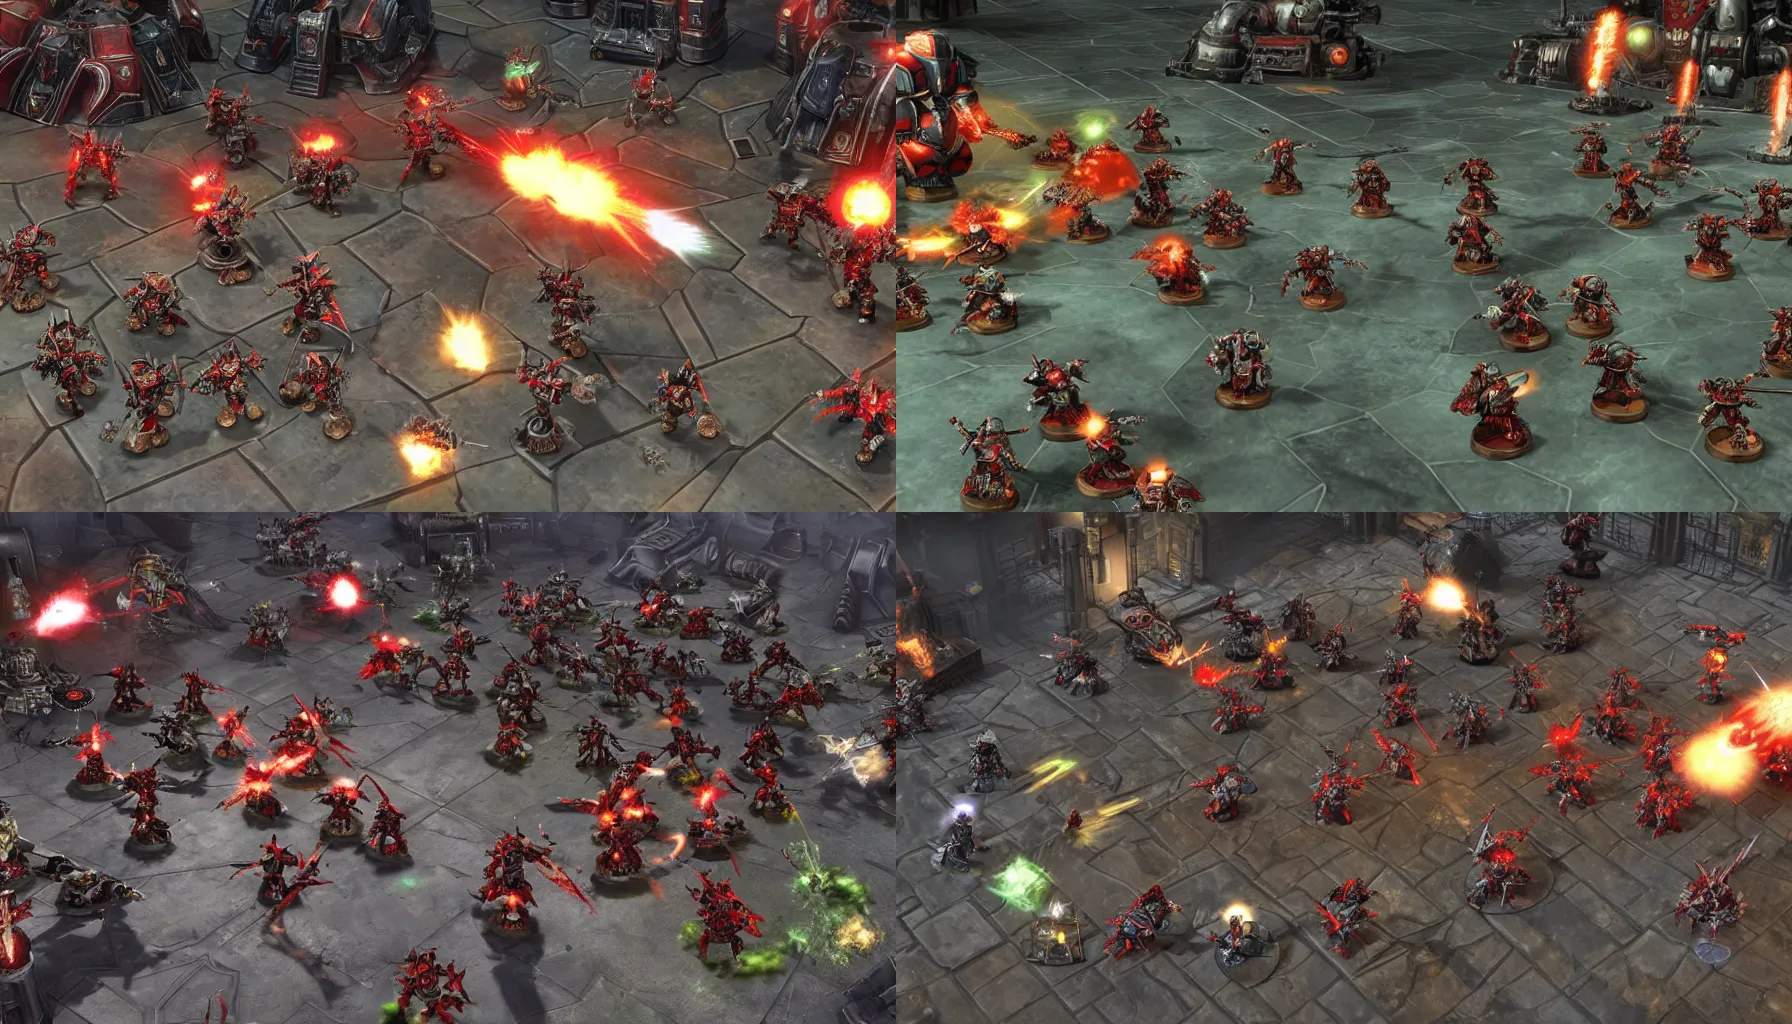 Prompt: A screenshot of Warhammer 40,000: Dawn of War